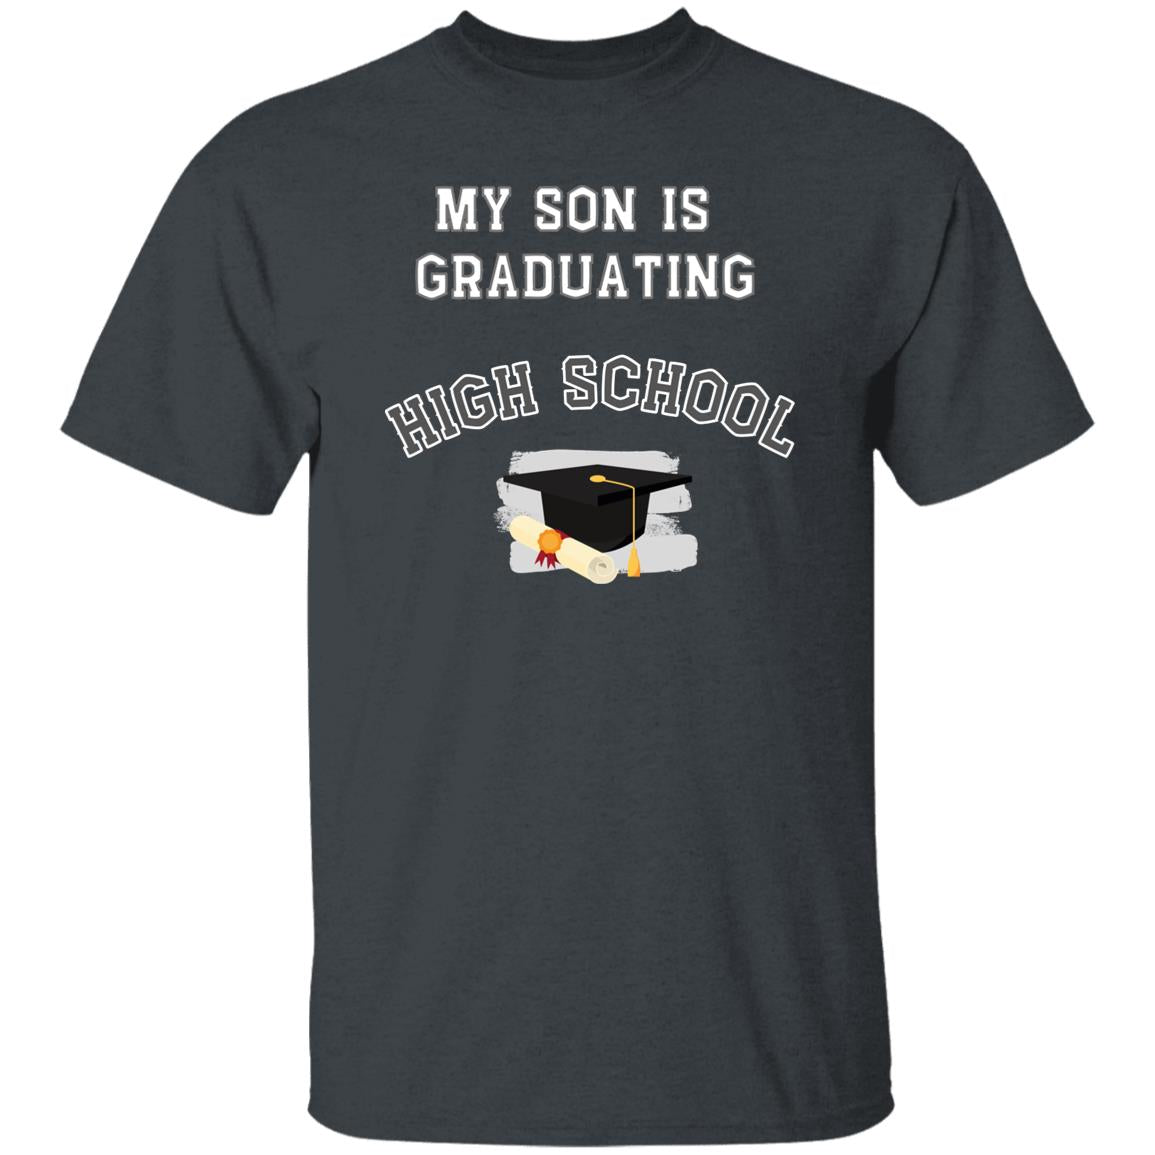 My son is graduating high school Tshirt